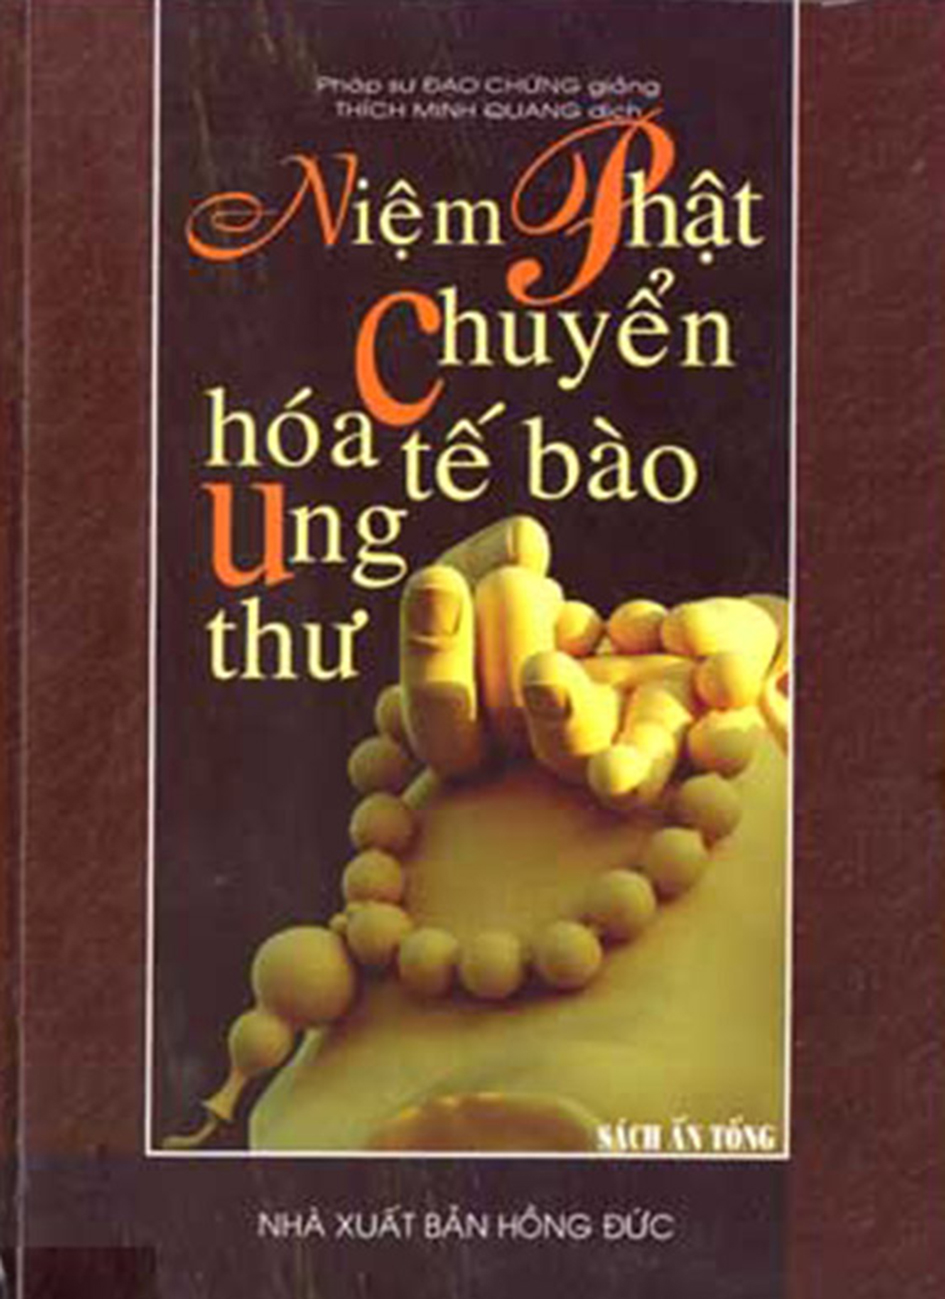 Niem Phat Chuyen Hoa Te Bao Ung Thu